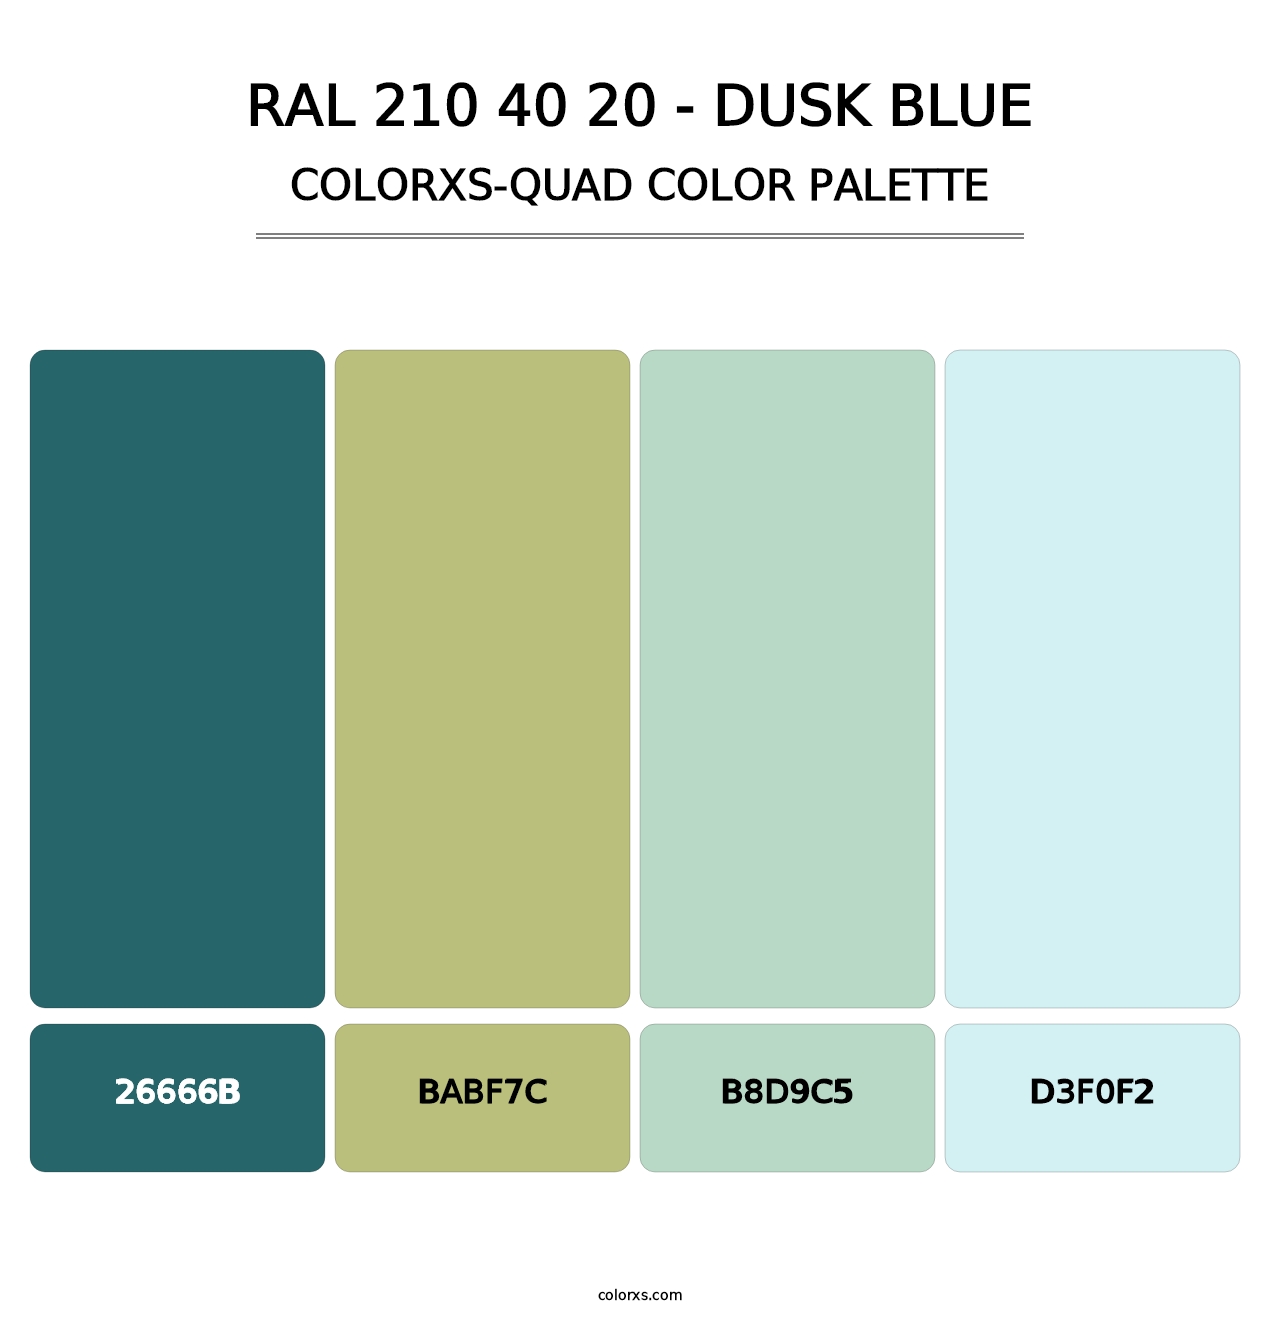 RAL 210 40 20 - Dusk Blue - Colorxs Quad Palette